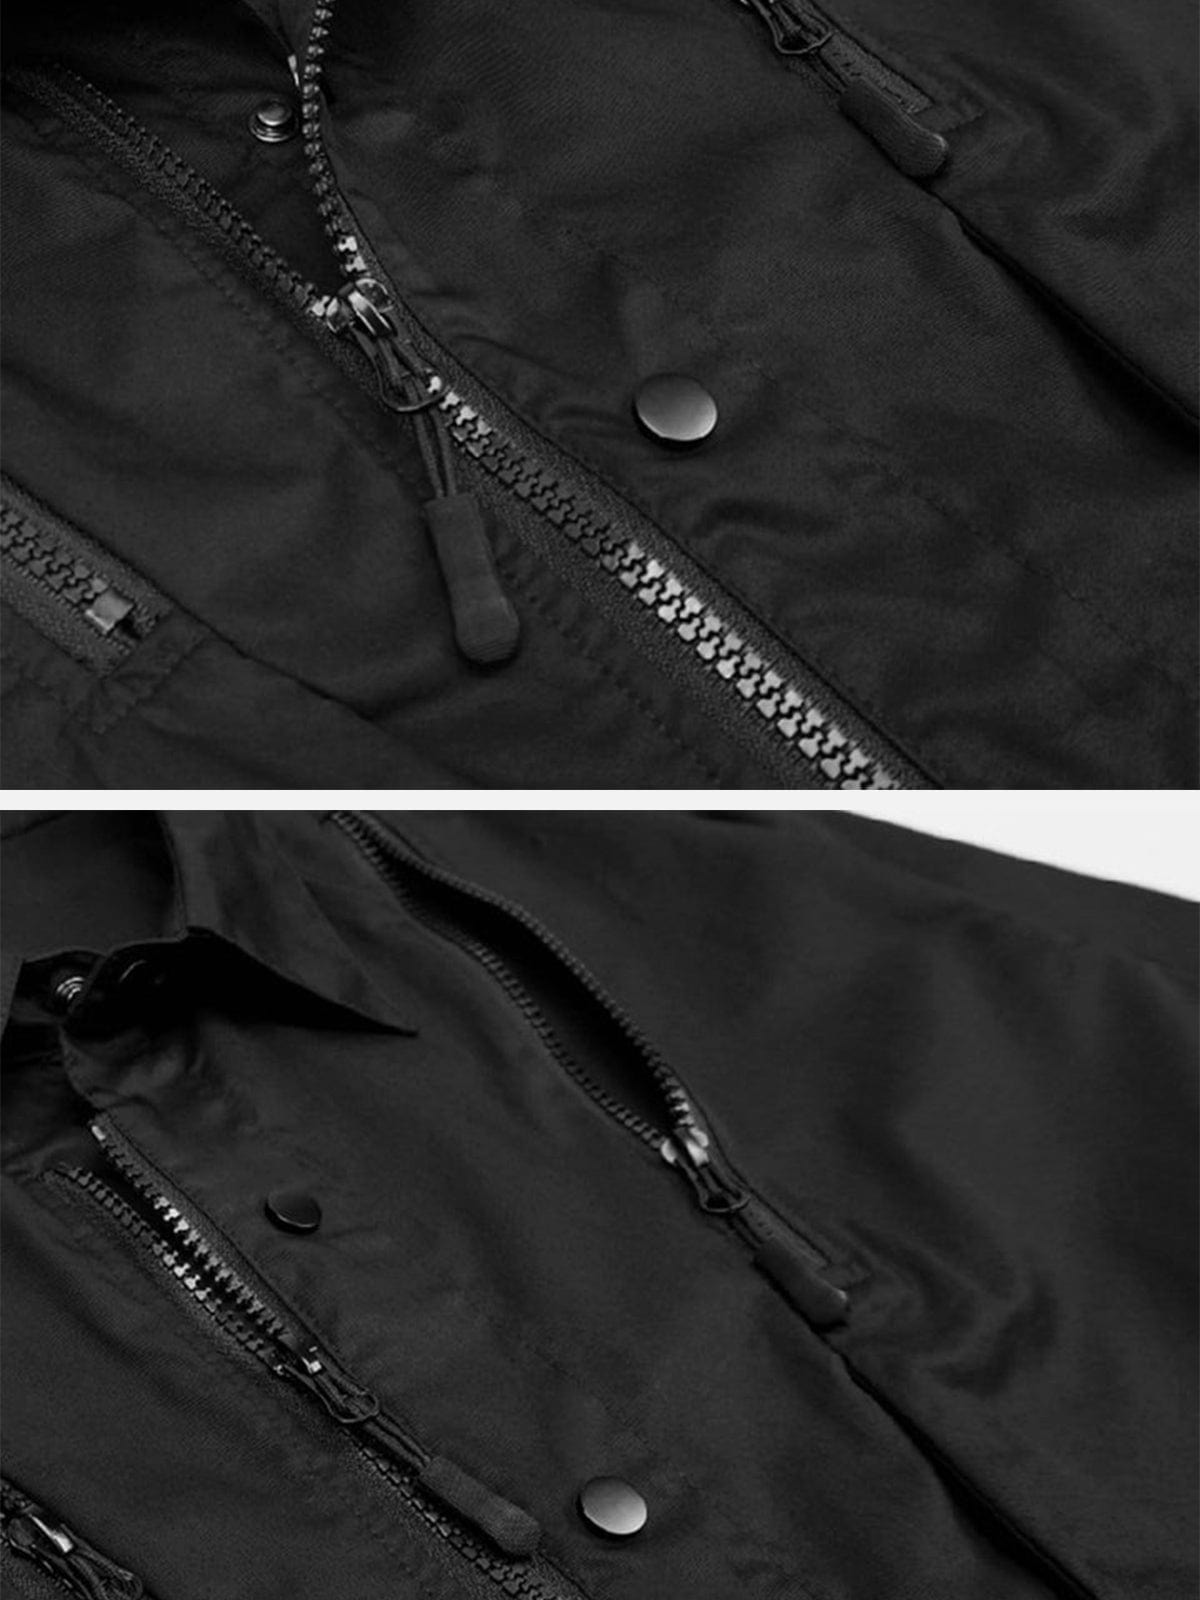 NEV Multi-shape Zipper Buttons Jacket